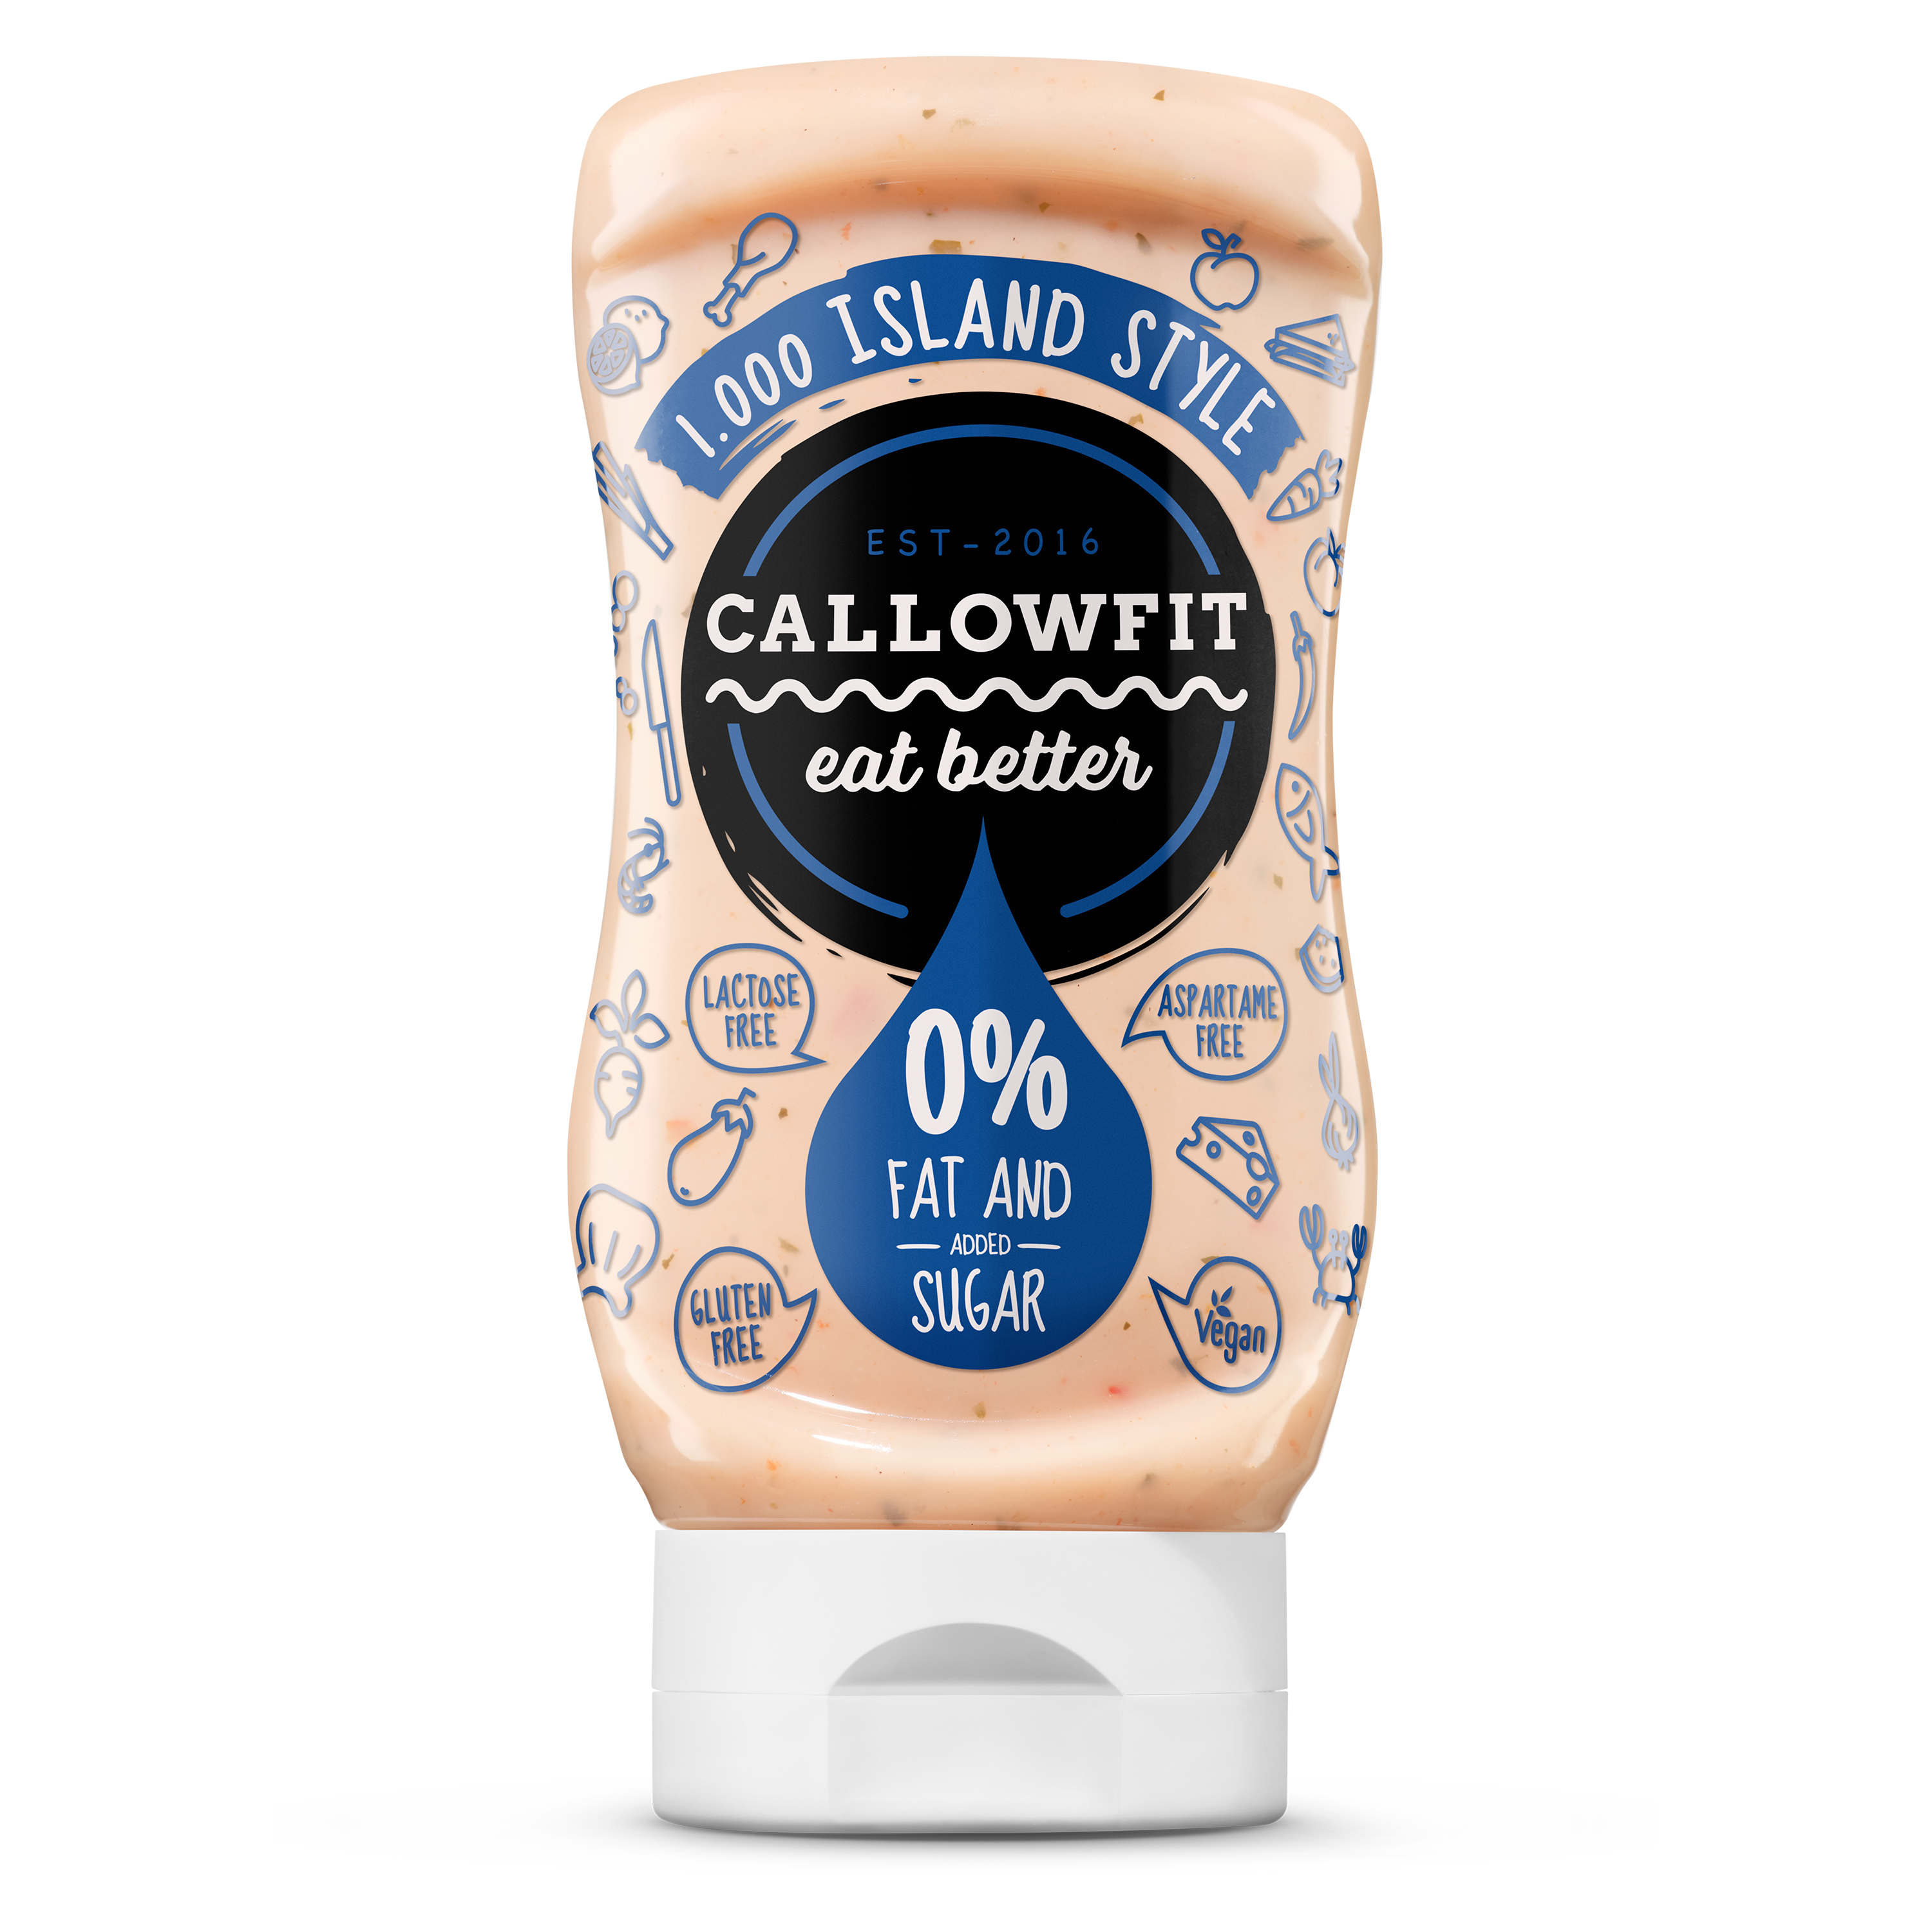 CALLOWFIT Sauce im Geschmack Island Style mit 0% Fett und Zucker in einer Tube mit blauen Aufdruck.